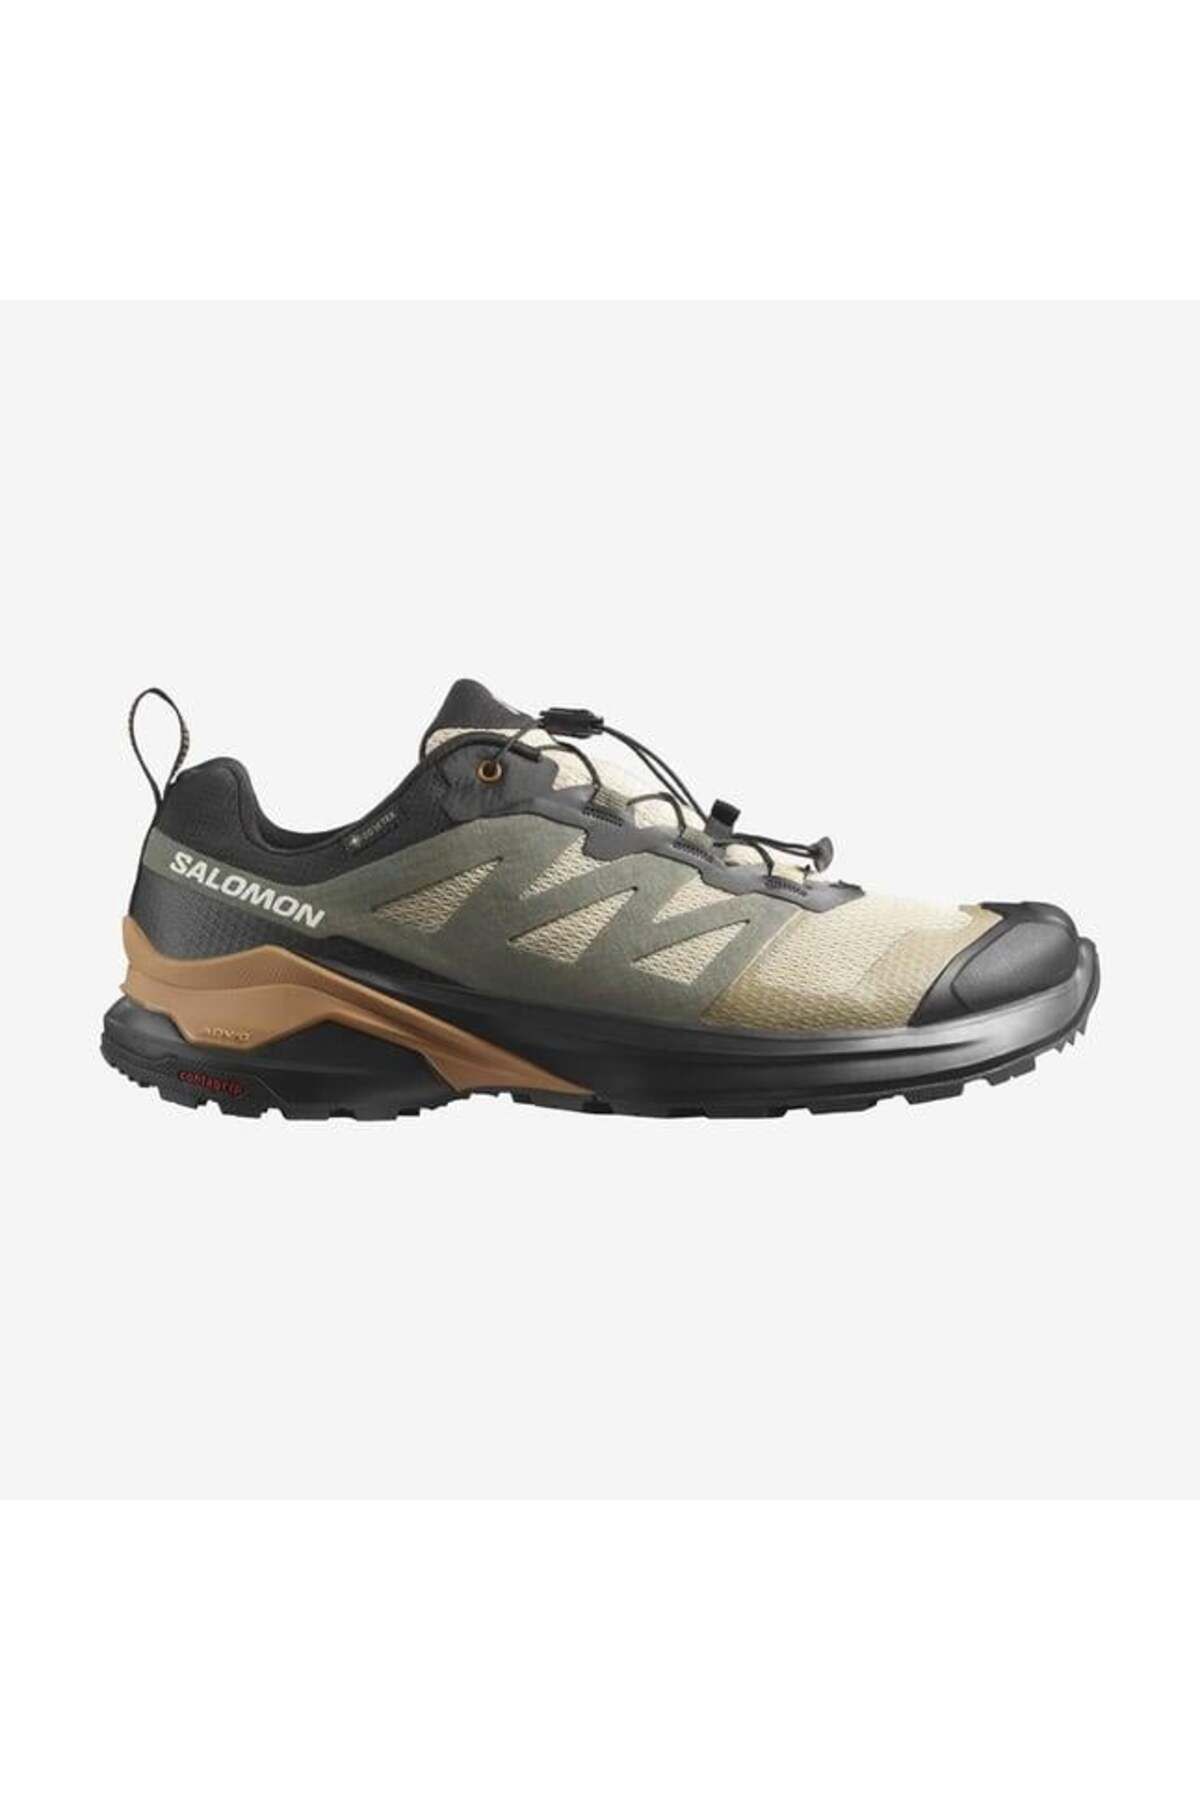 Salomon X-Adventure Gtx Erkek Koşu Ayakkabı